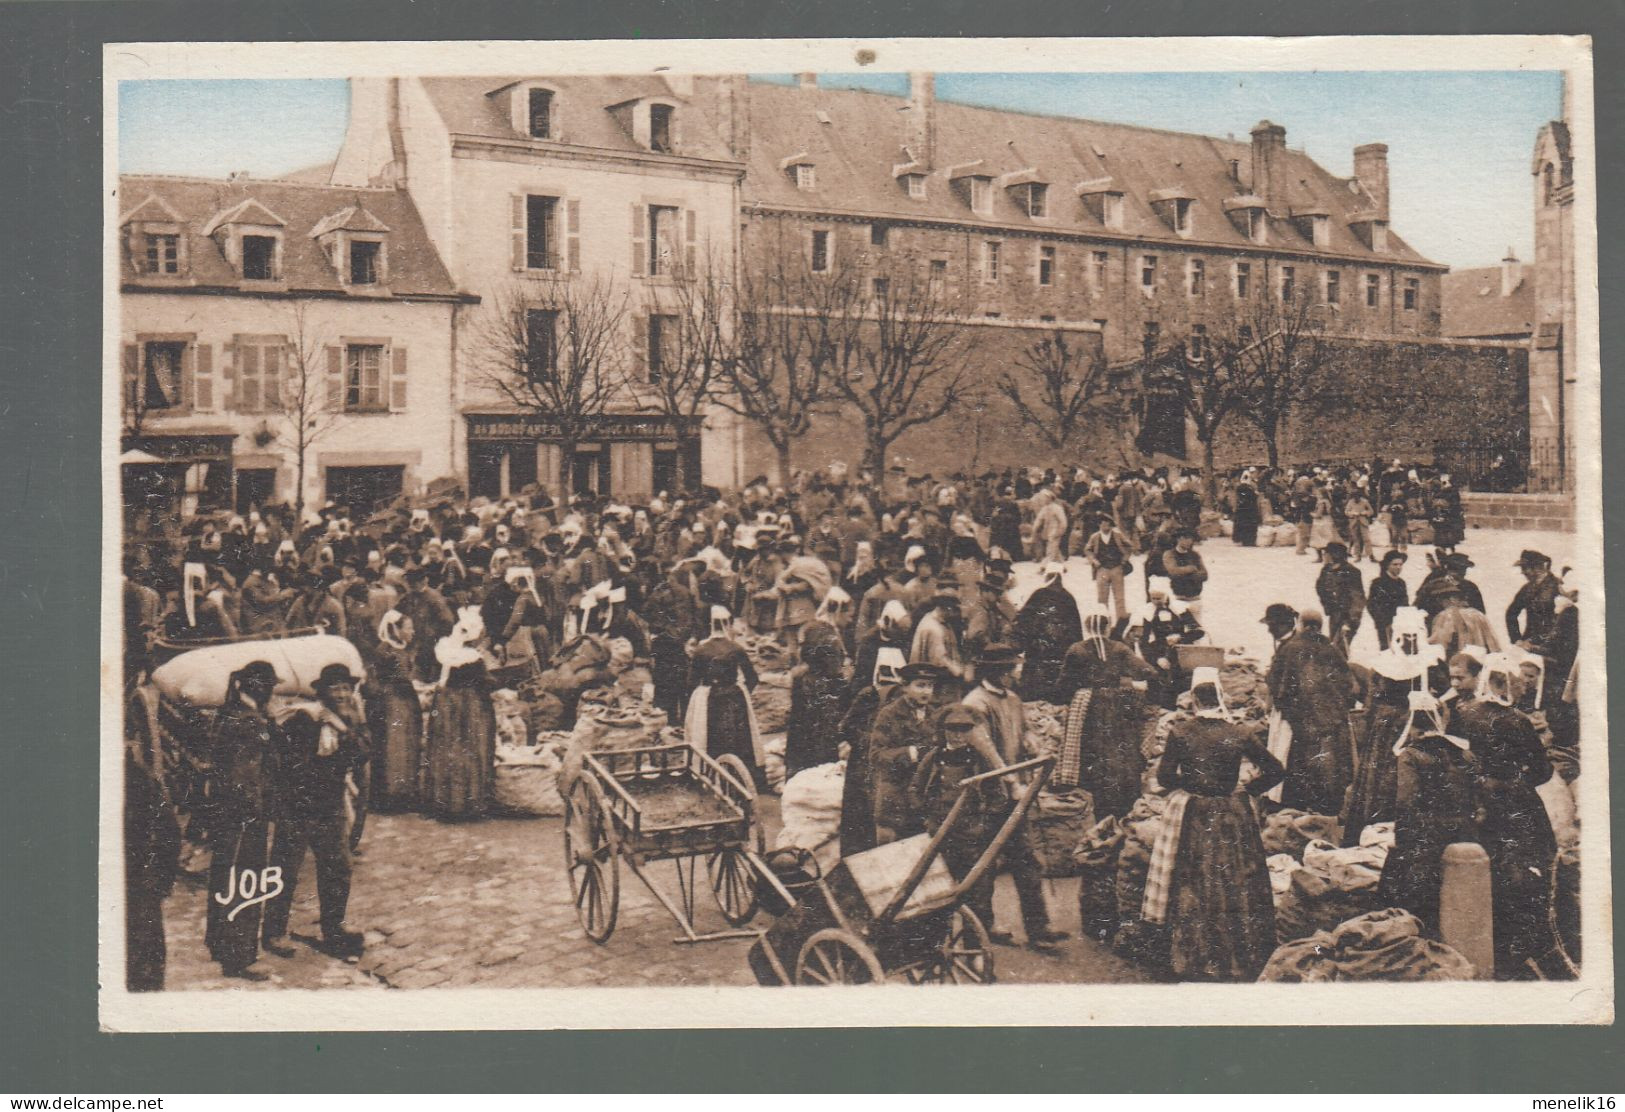 CP - 29 - Quimper - Place St-Mathieu - La Caserne - Jour De Marché Aux Pommes De Terre - Quimper